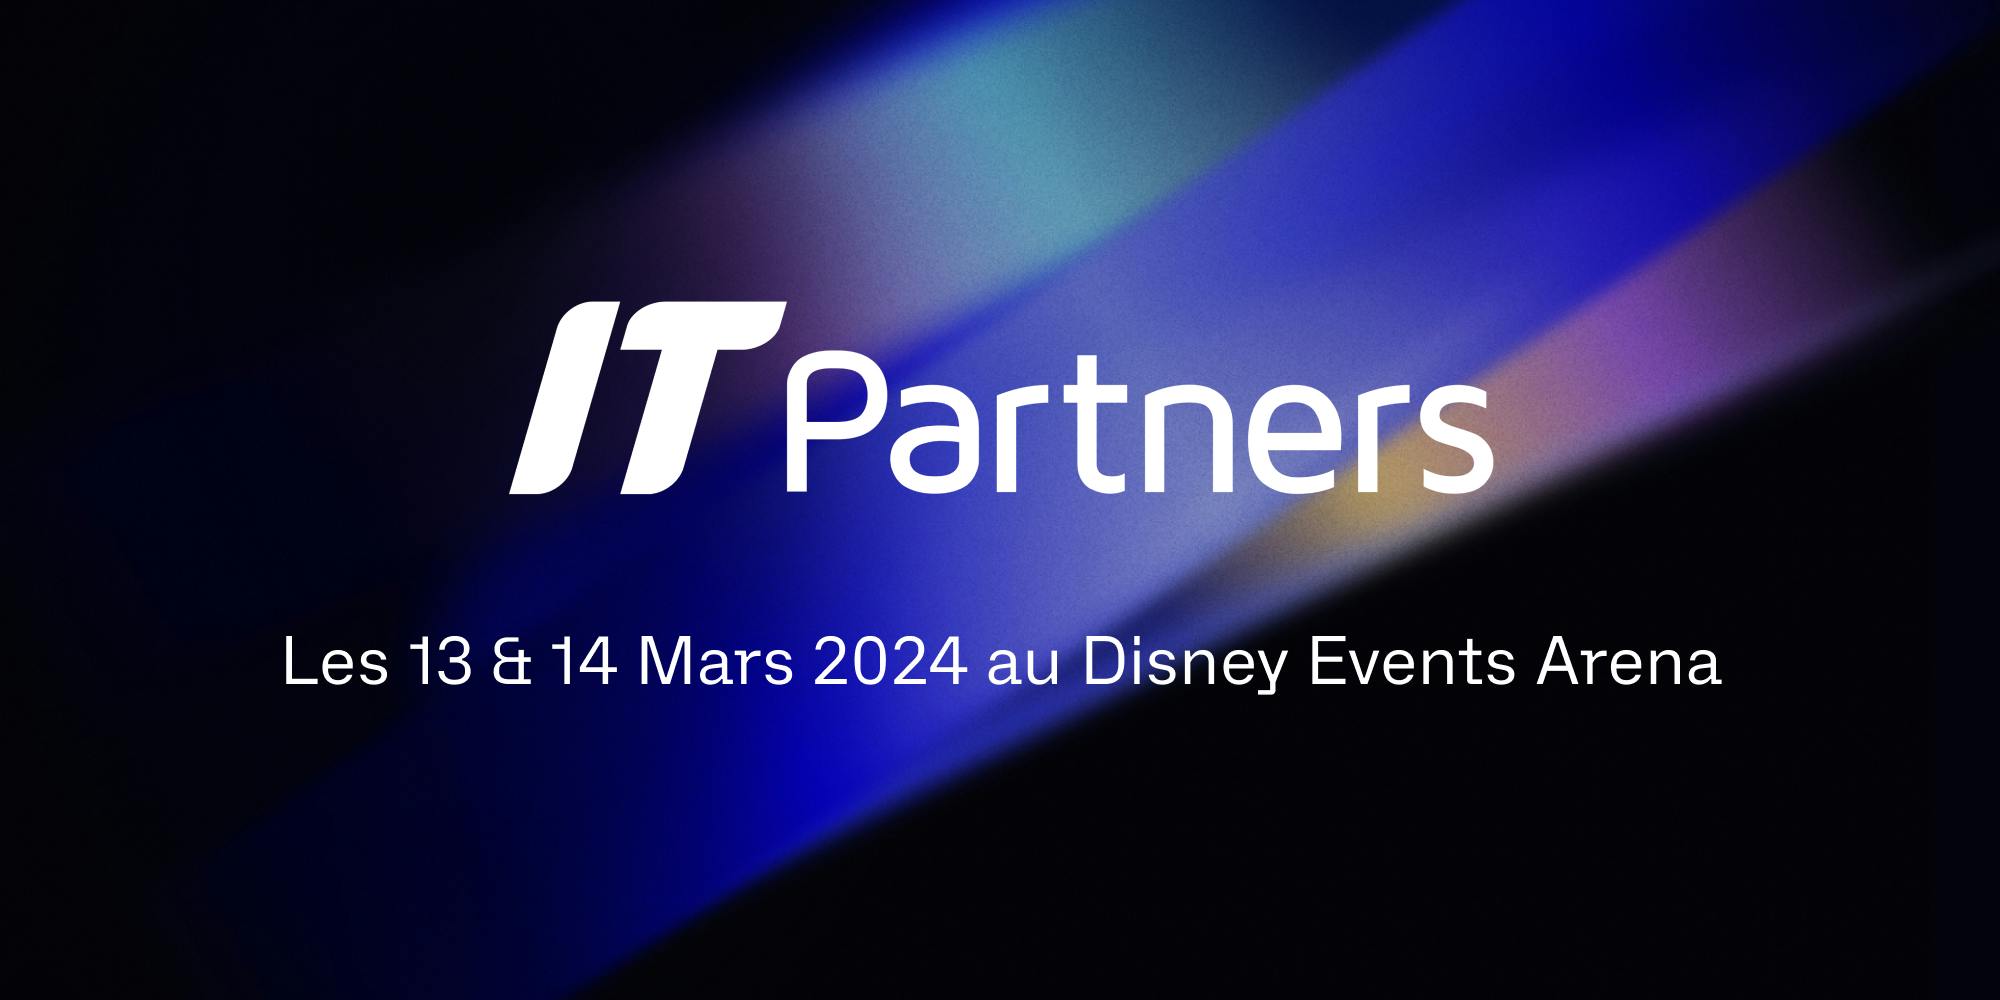 Notre partenariat commence à l’IT Partners !